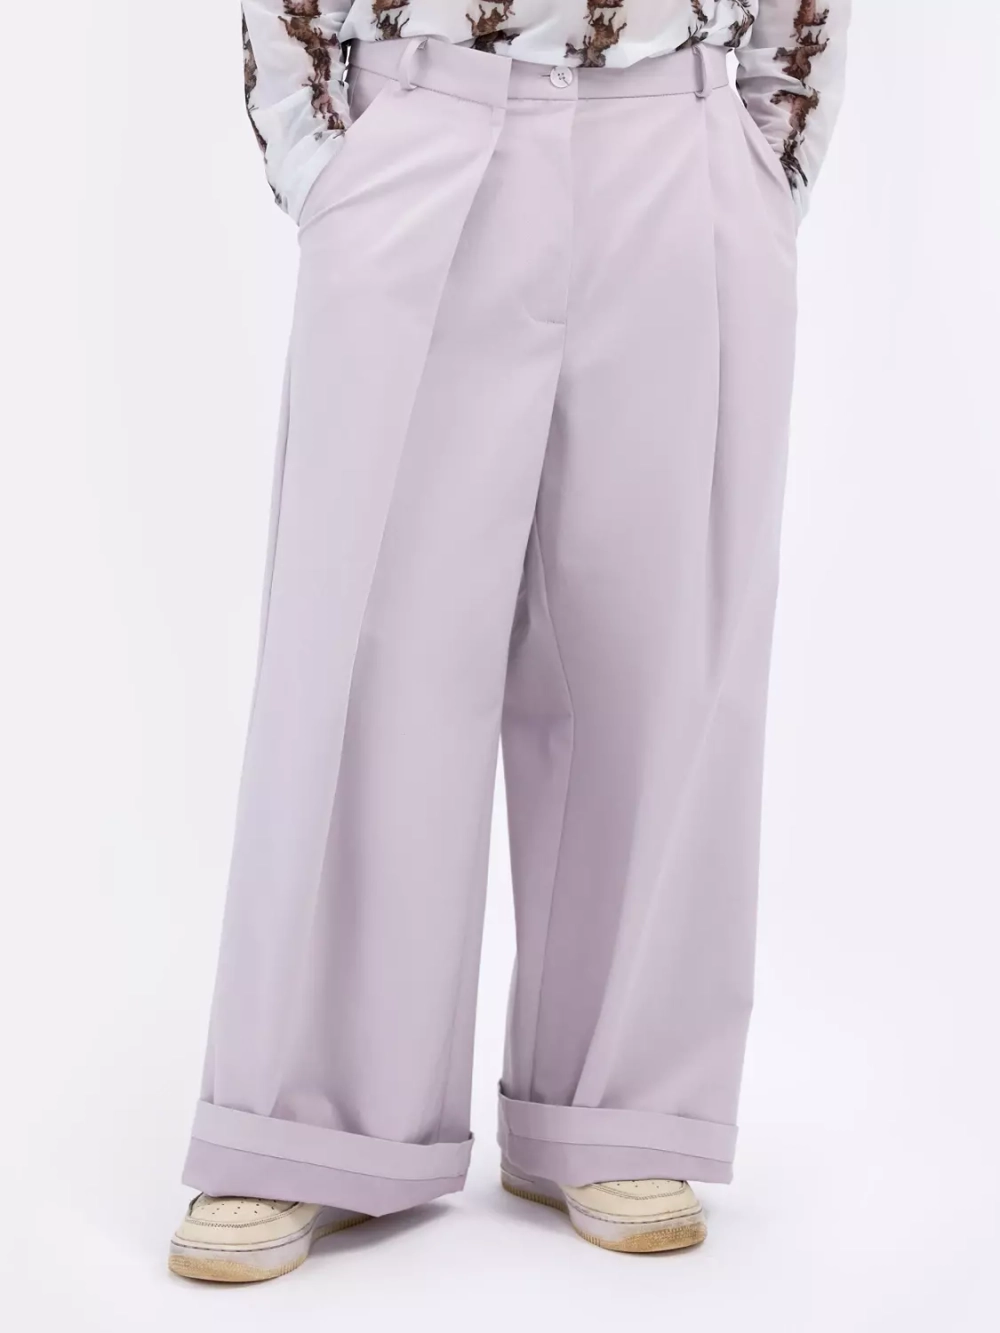 Широкие светлые брюки унисекс с вышивкой OLA OLA